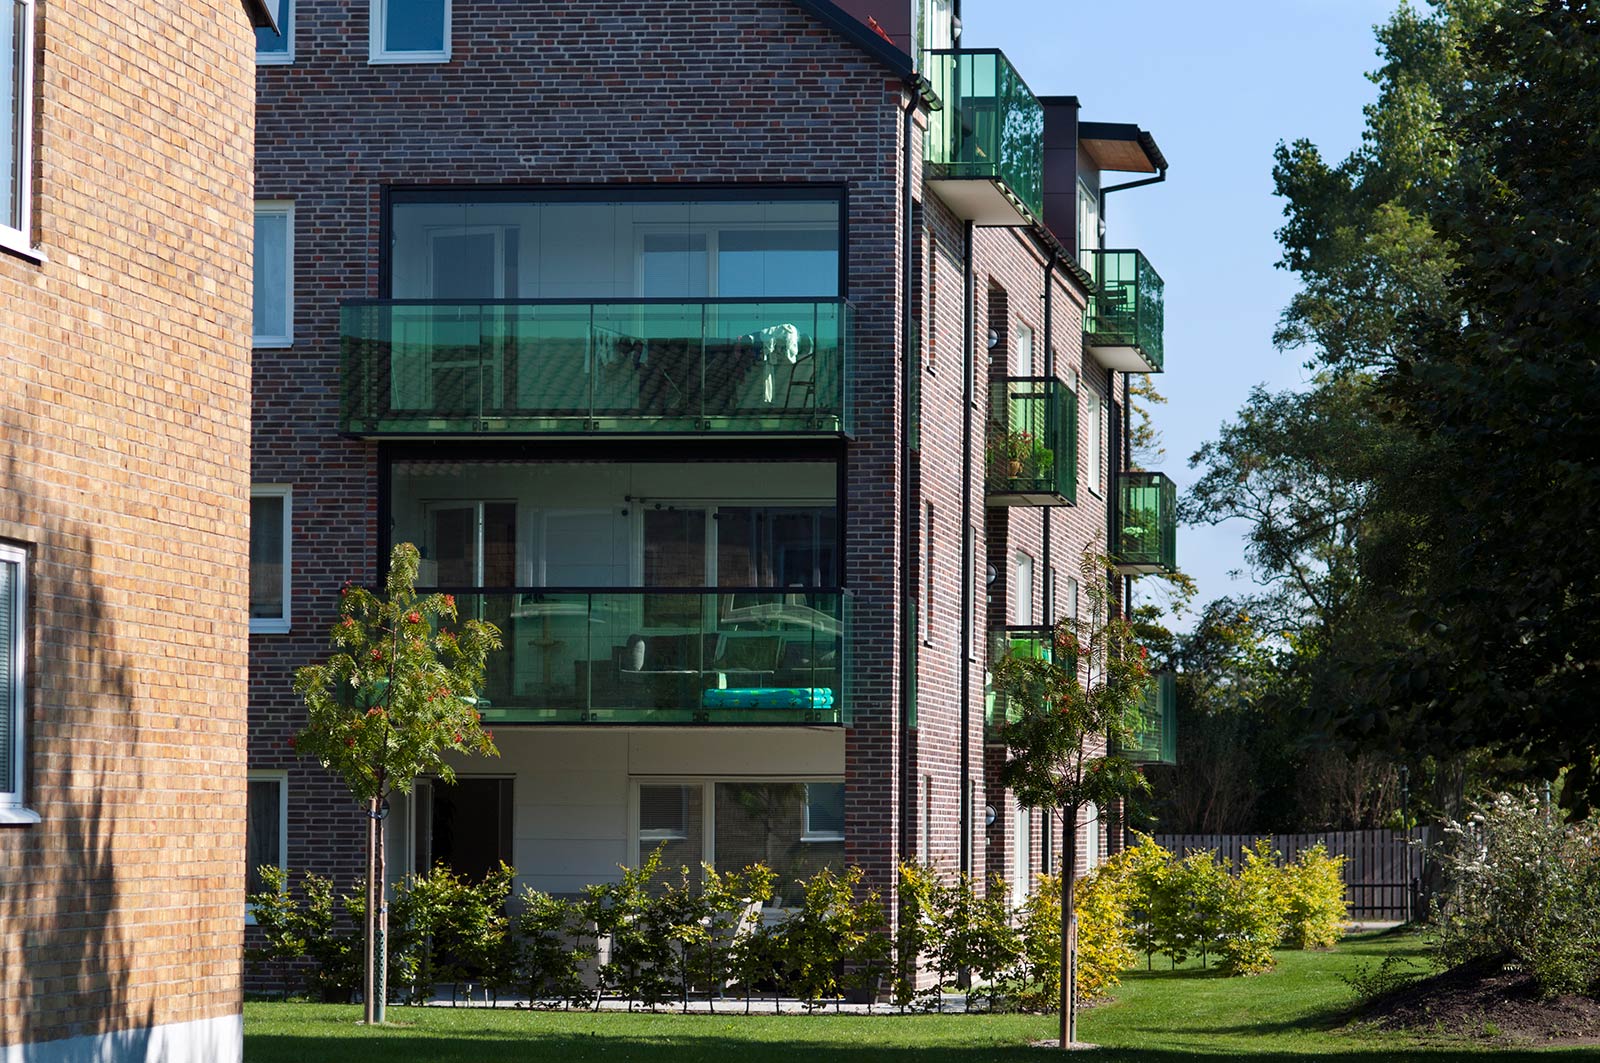 Det nya flerfamiljshuset i Vapenhuset med balkongräcken i grönt glas